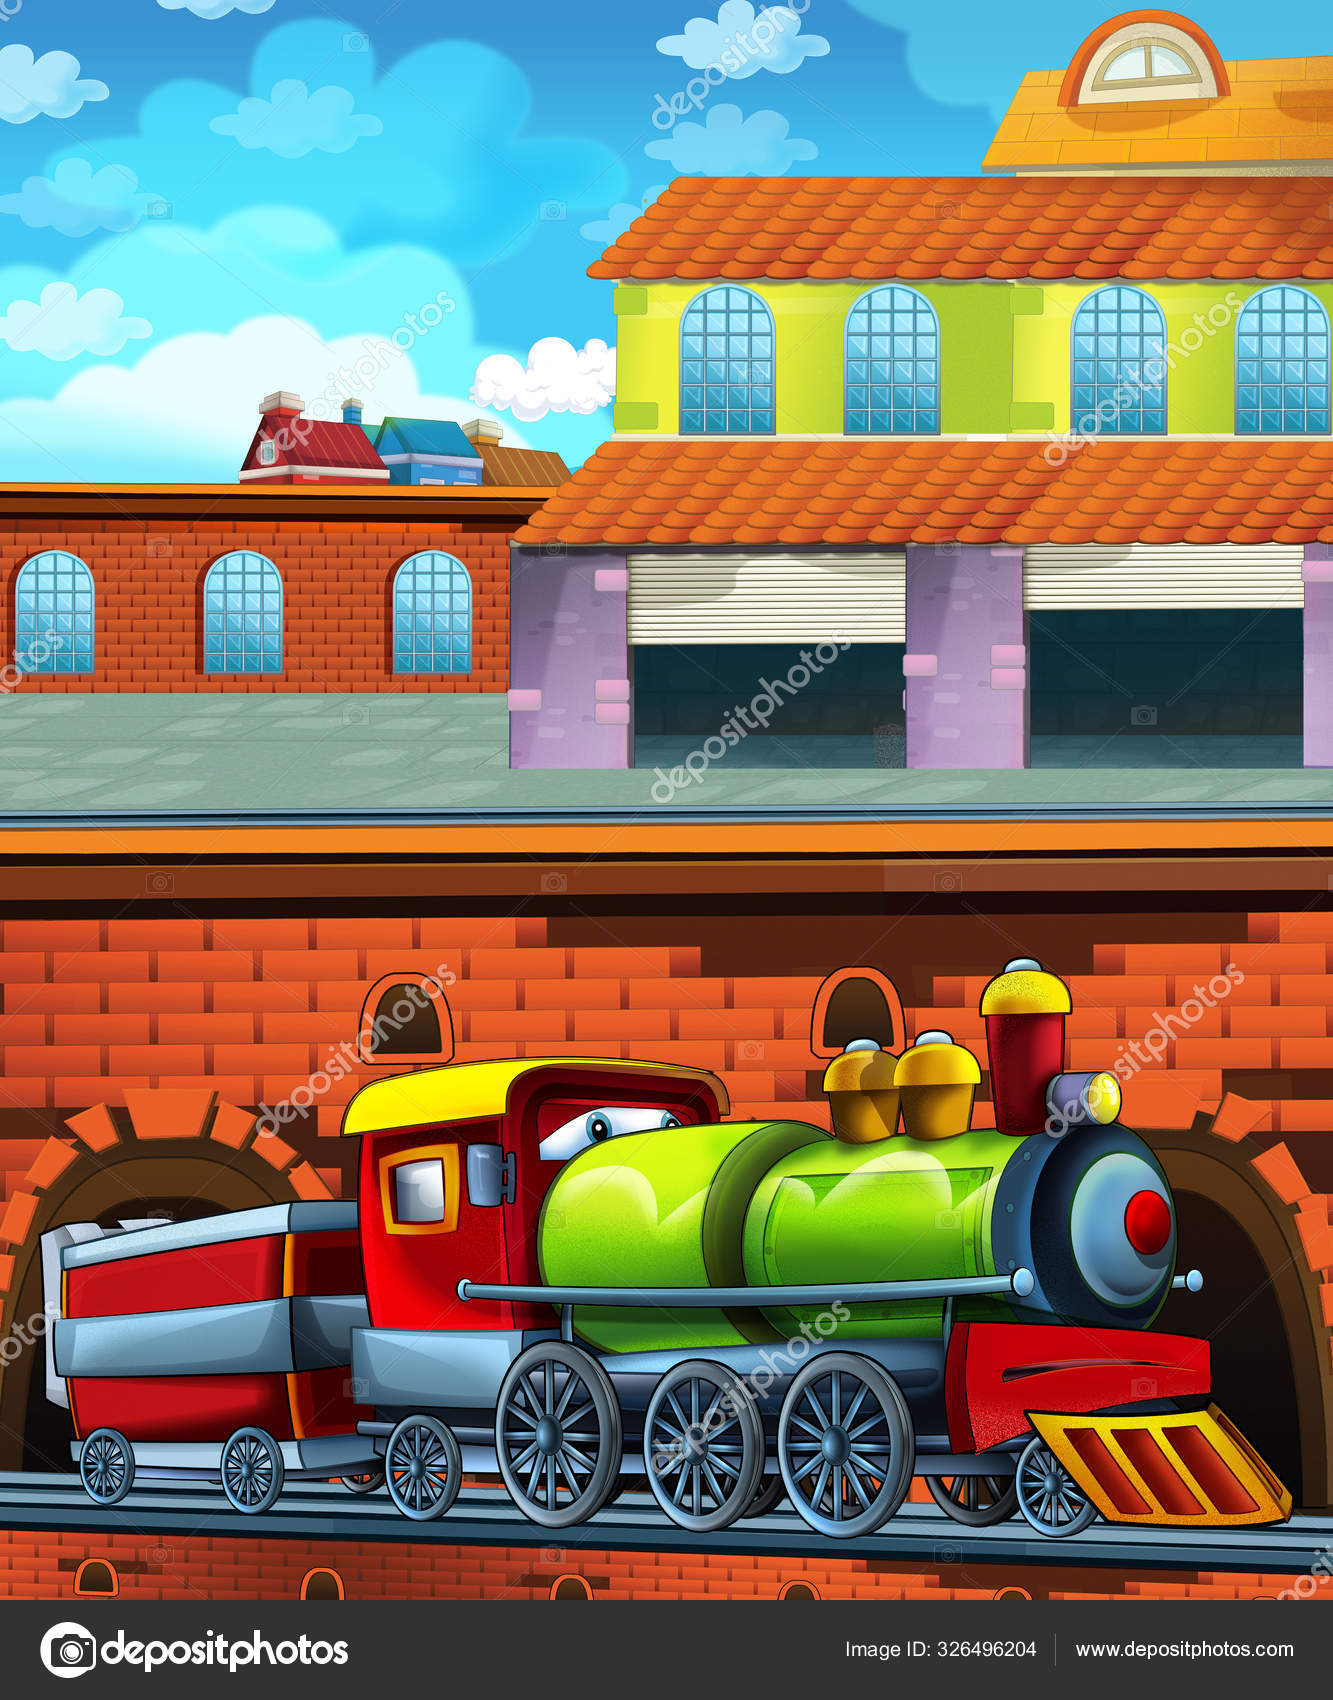 Cartoon Lustig Aussehender Zug Auf Dem Bahnhof In Der Nähe Der Stadt bei Kinder Bilder Ausserhalb Der Stadt